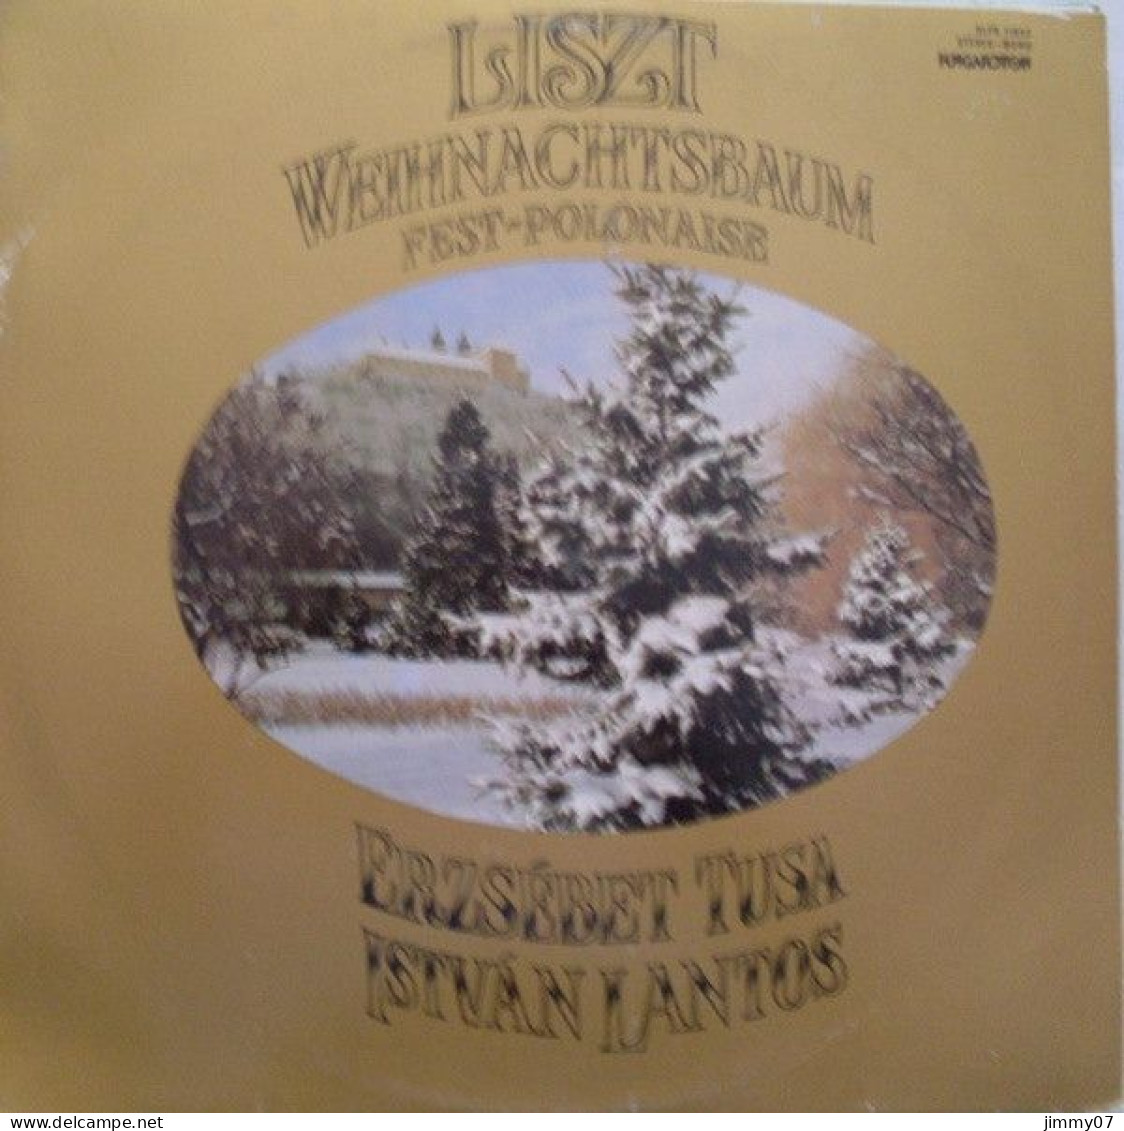 Franz Liszt, Erzsébet Tusa*, István Lantos* - Weihnachtsbaum - Fest-Polonaise (LP, Album) - Klassiekers